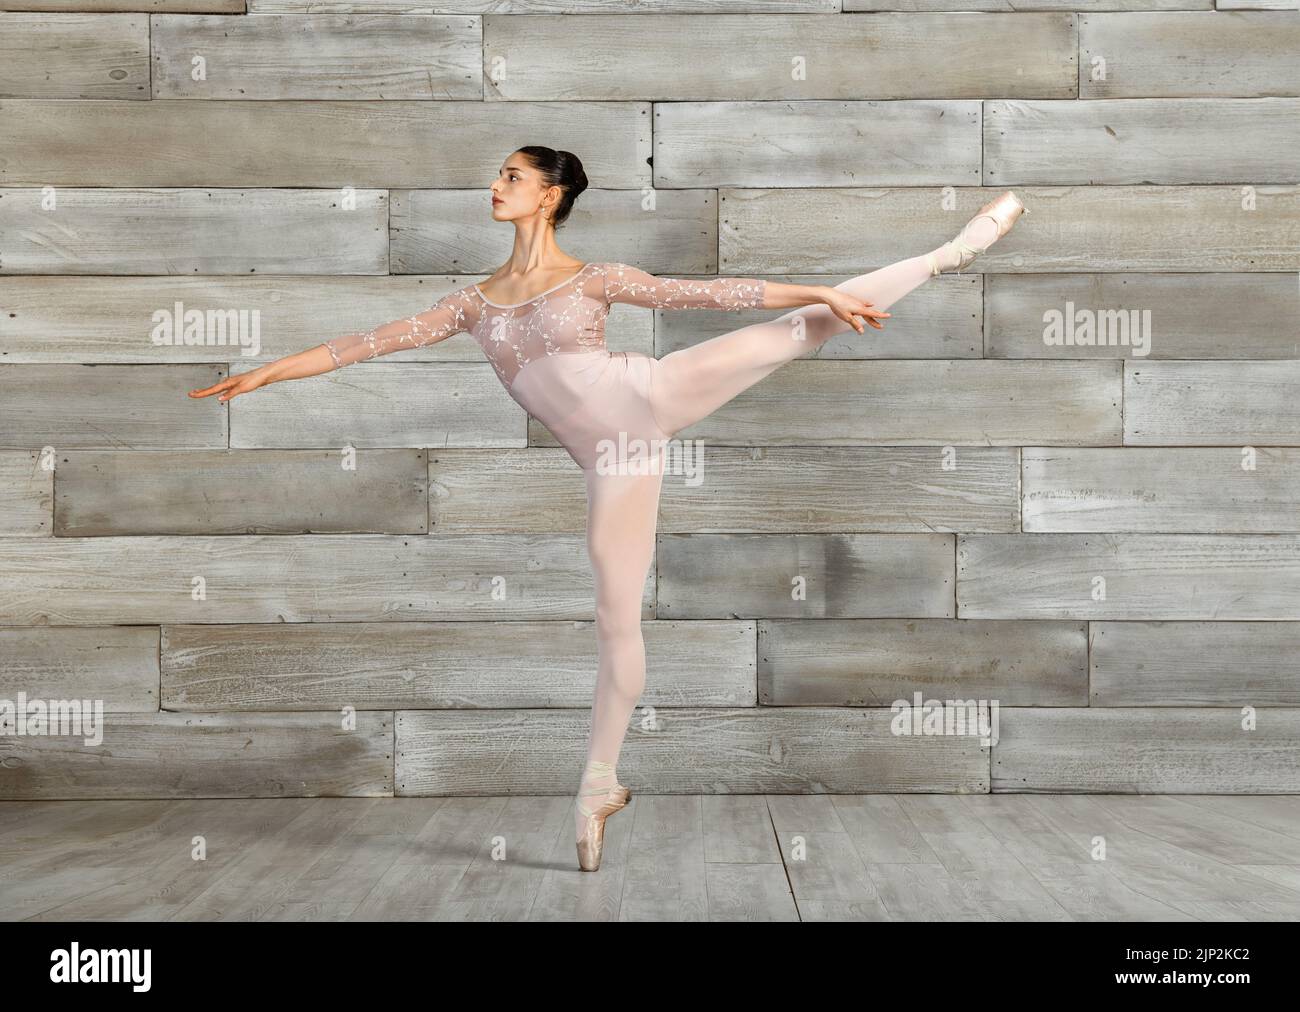 danseuse de ballet, danseuse, danseuse, danseuse de ballet, danseuse de ballet, danseurs, ballets Banque D'Images